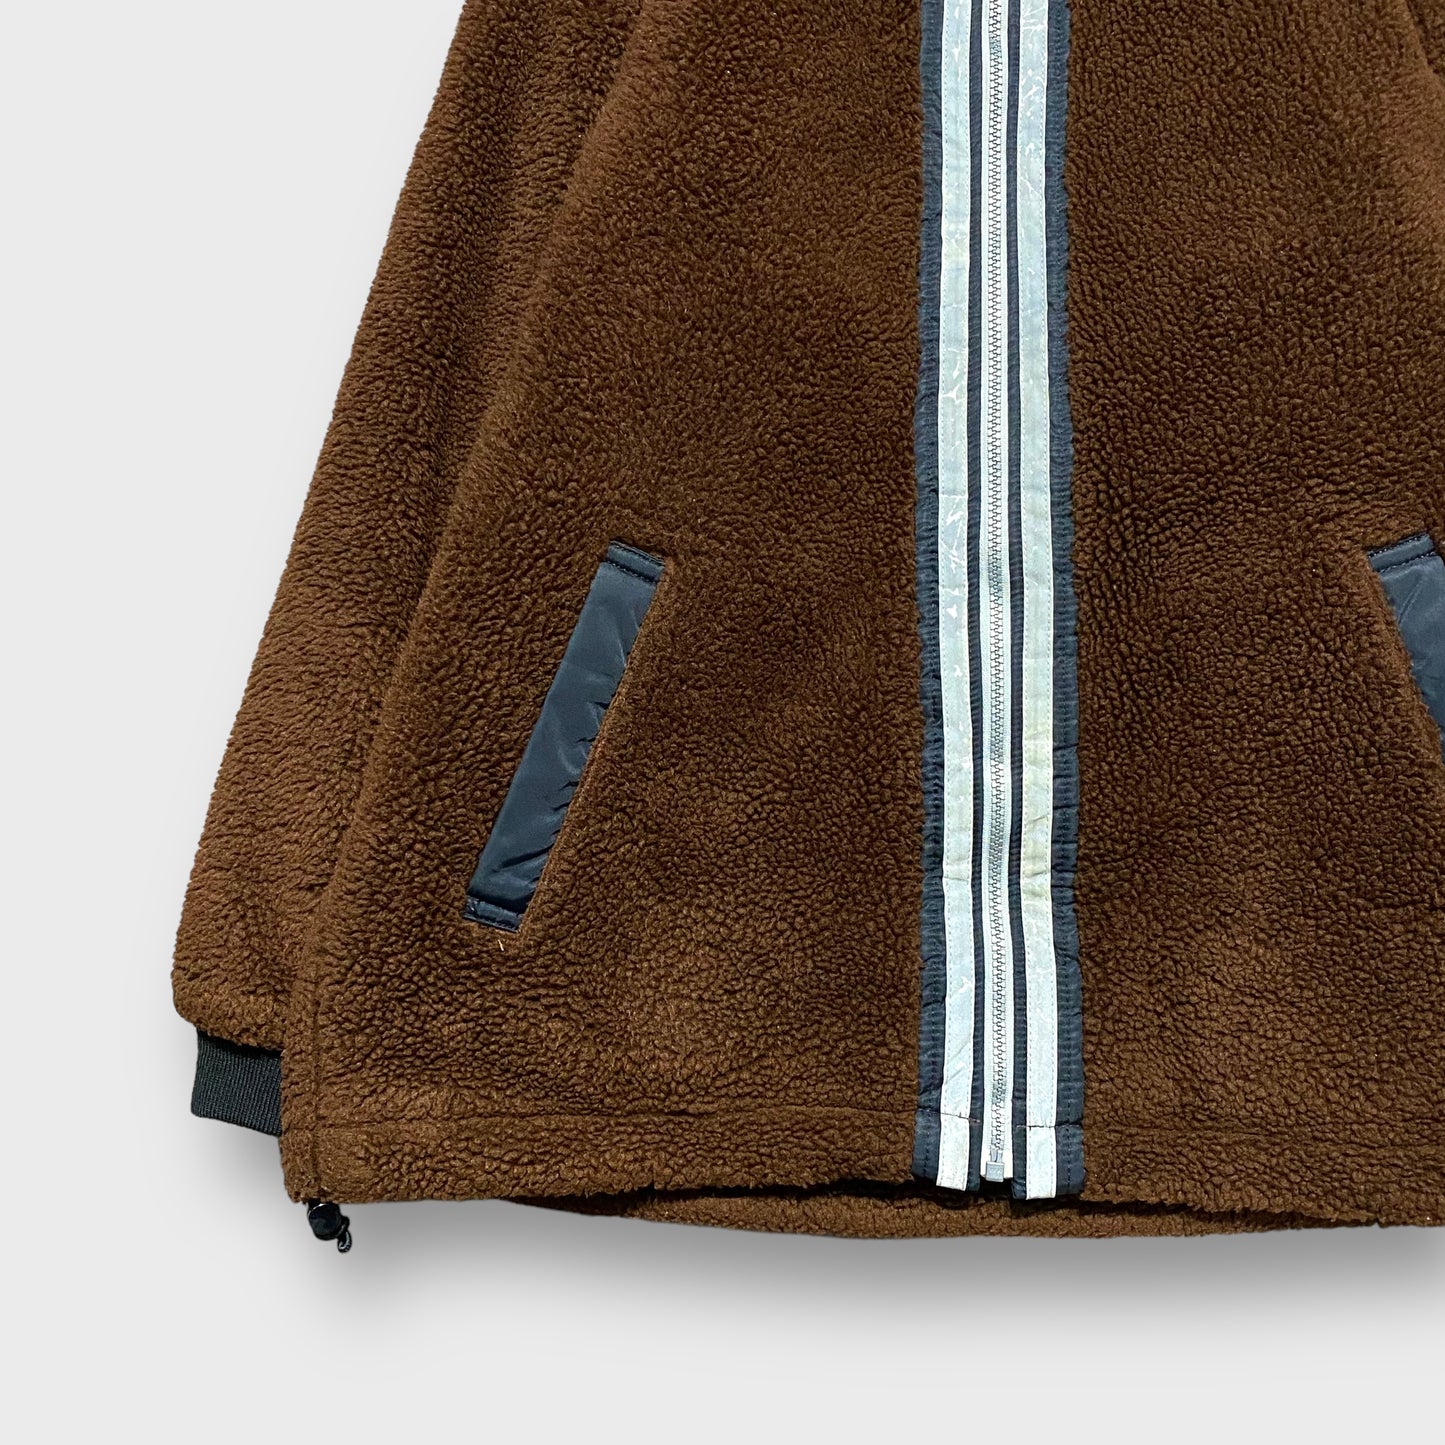 90's "adidas" Fleece jacket